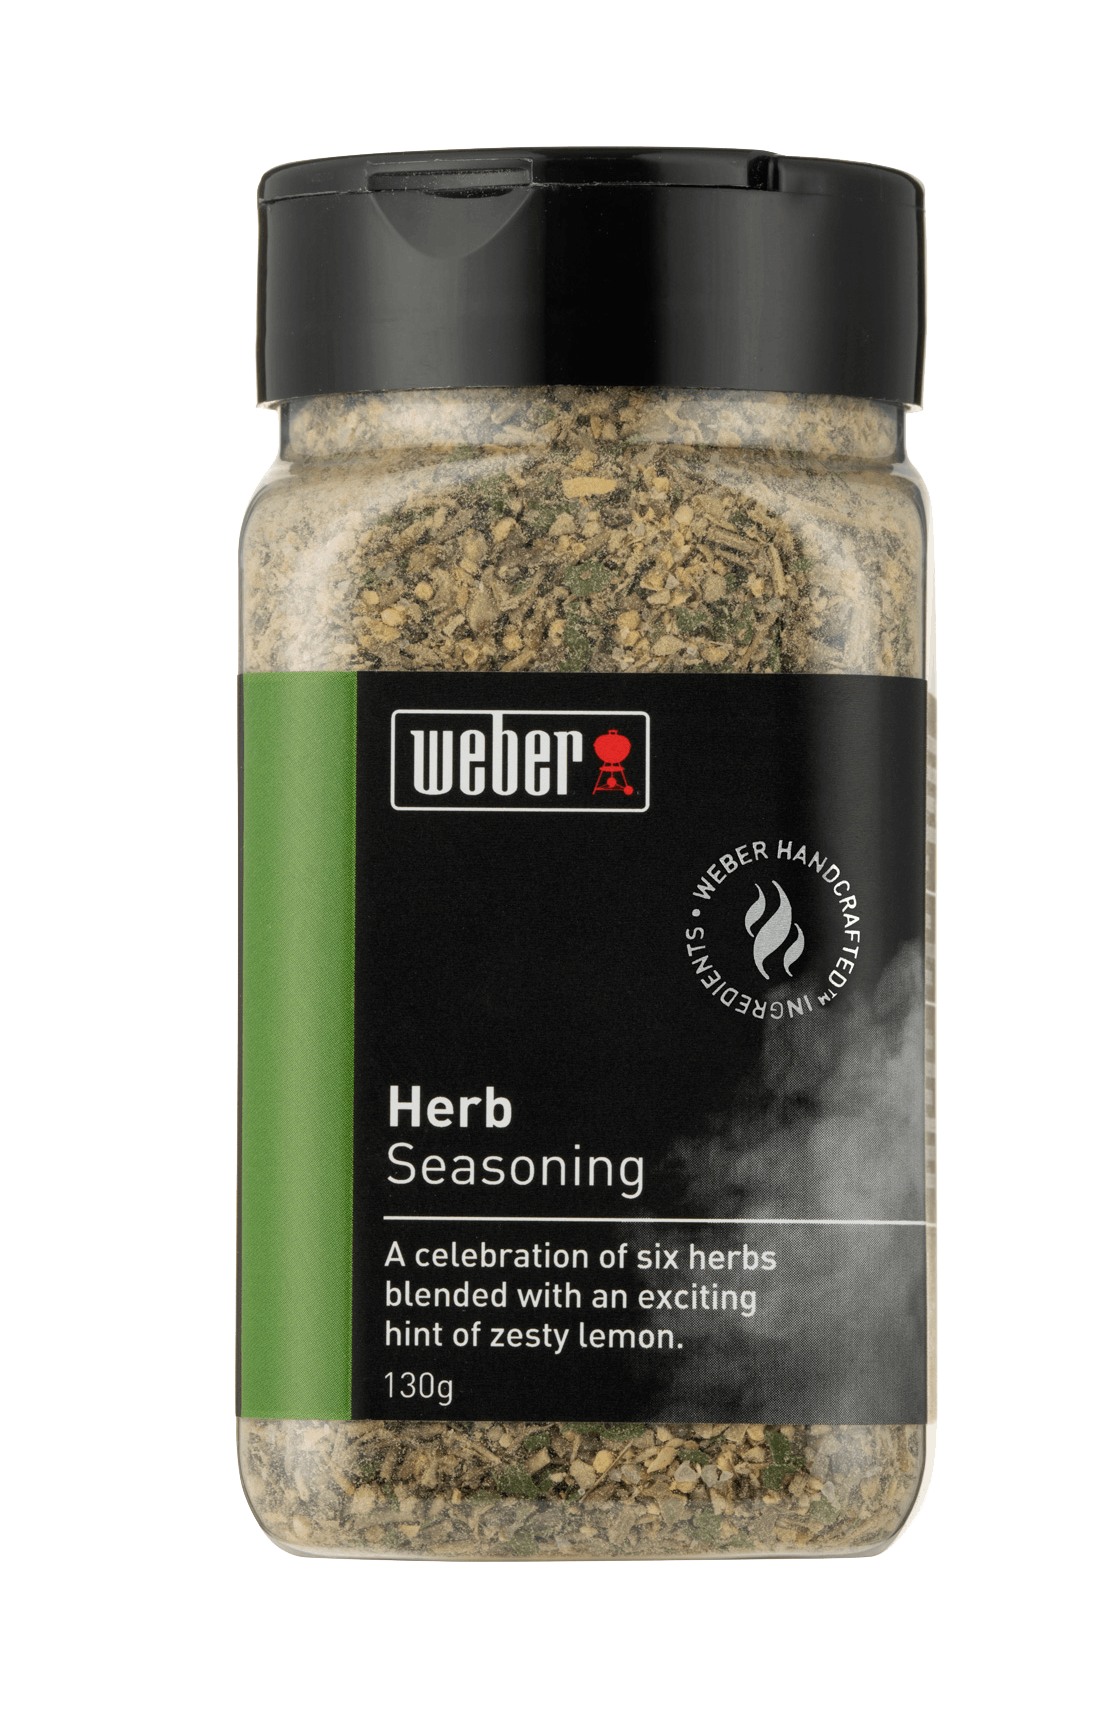 Weber® Roasted Garlic & Herb Seasoning - Weber Seasonings